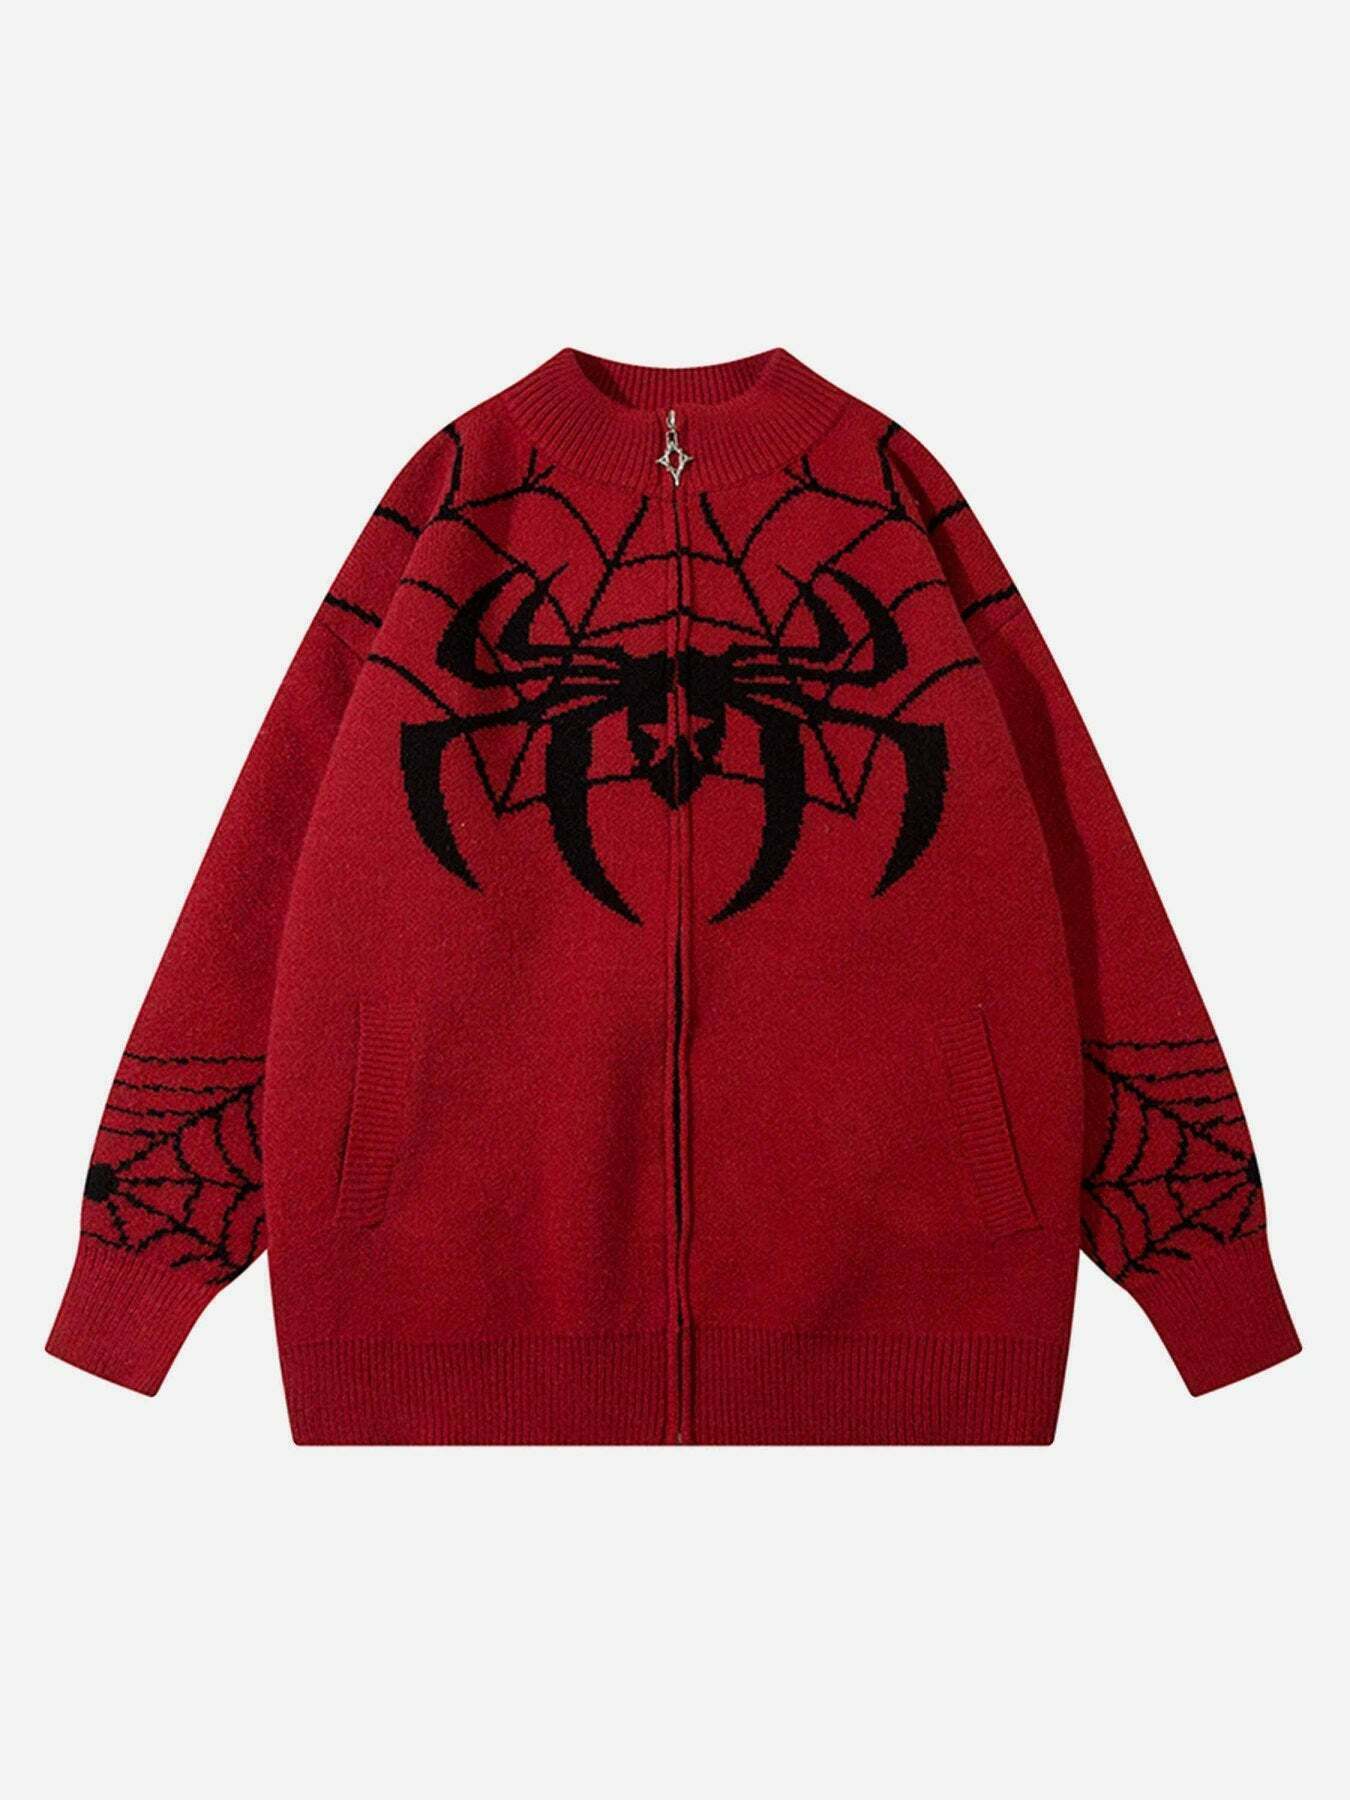 Gen Z K-POP Streetwear: Spider Print Loose Sweater Coat for Y2K Style